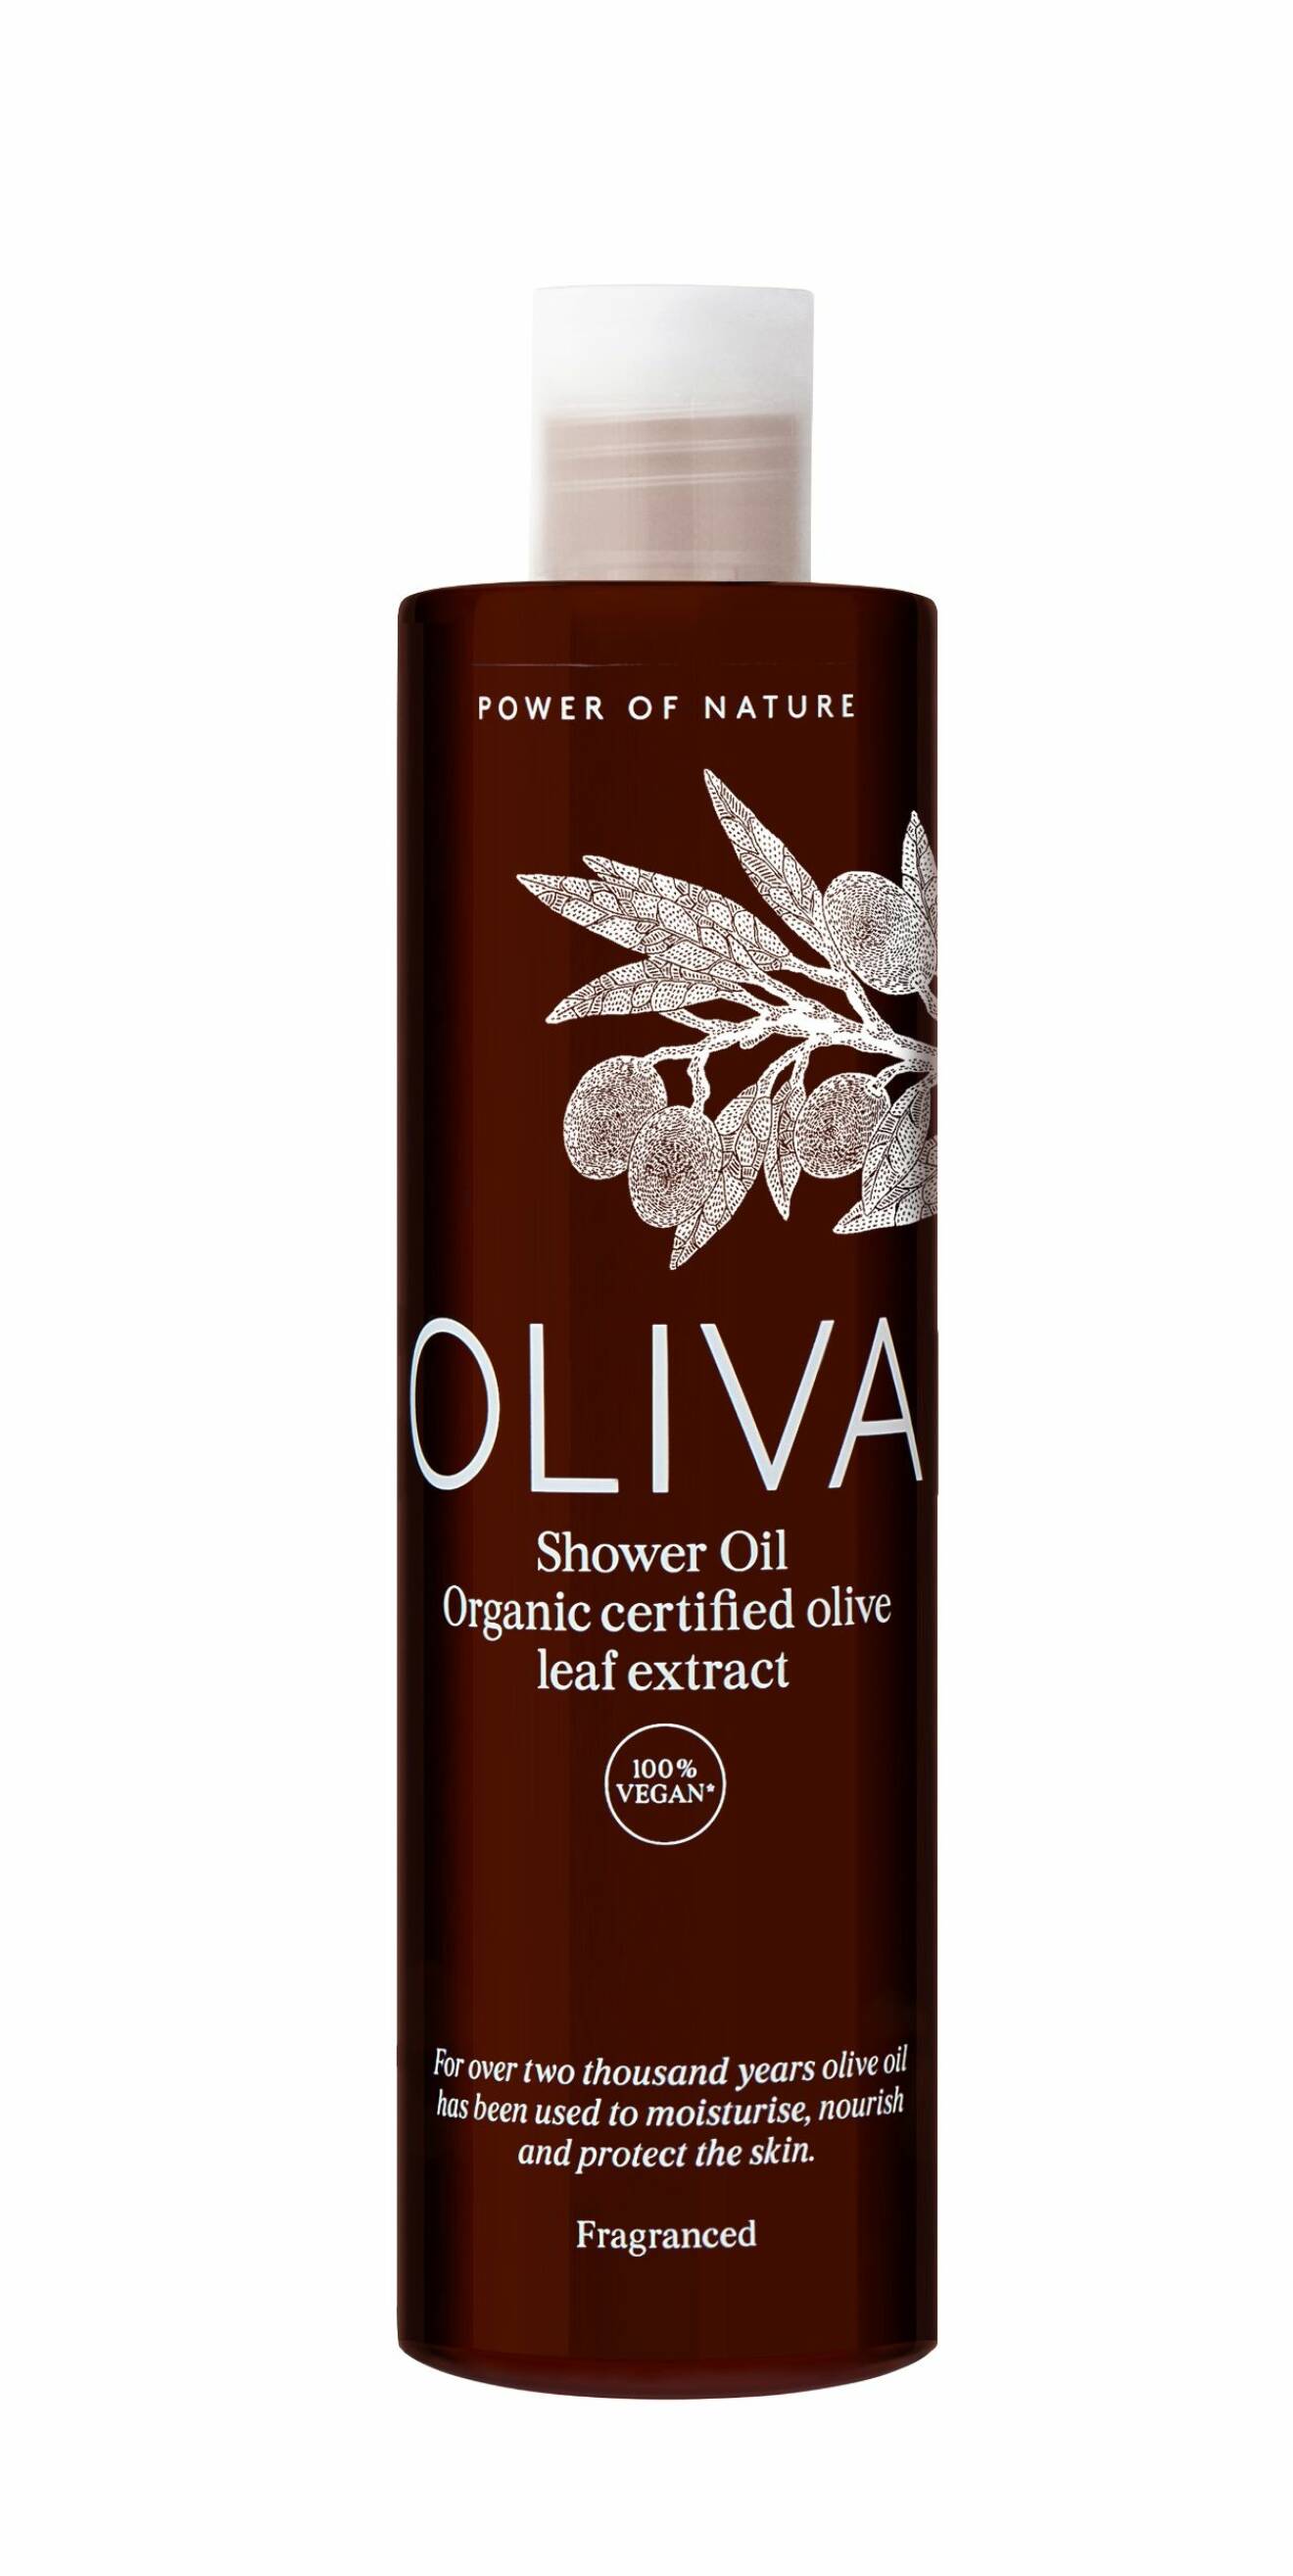 Oliva shower oil